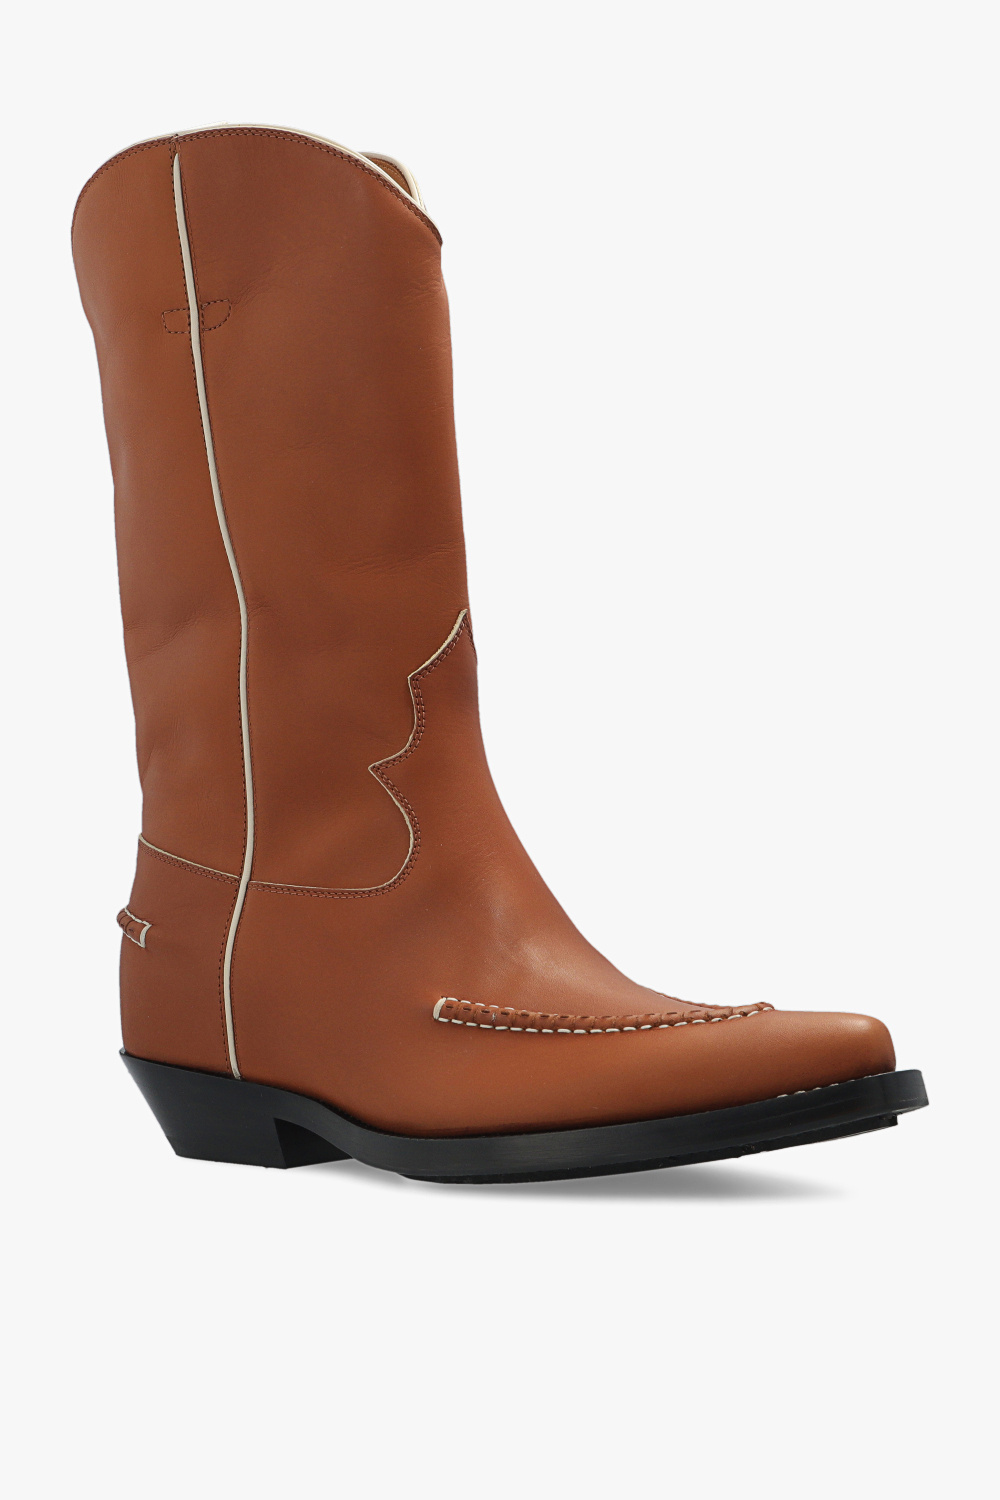 Chloé ‘Nelie’ leather cowboy boots